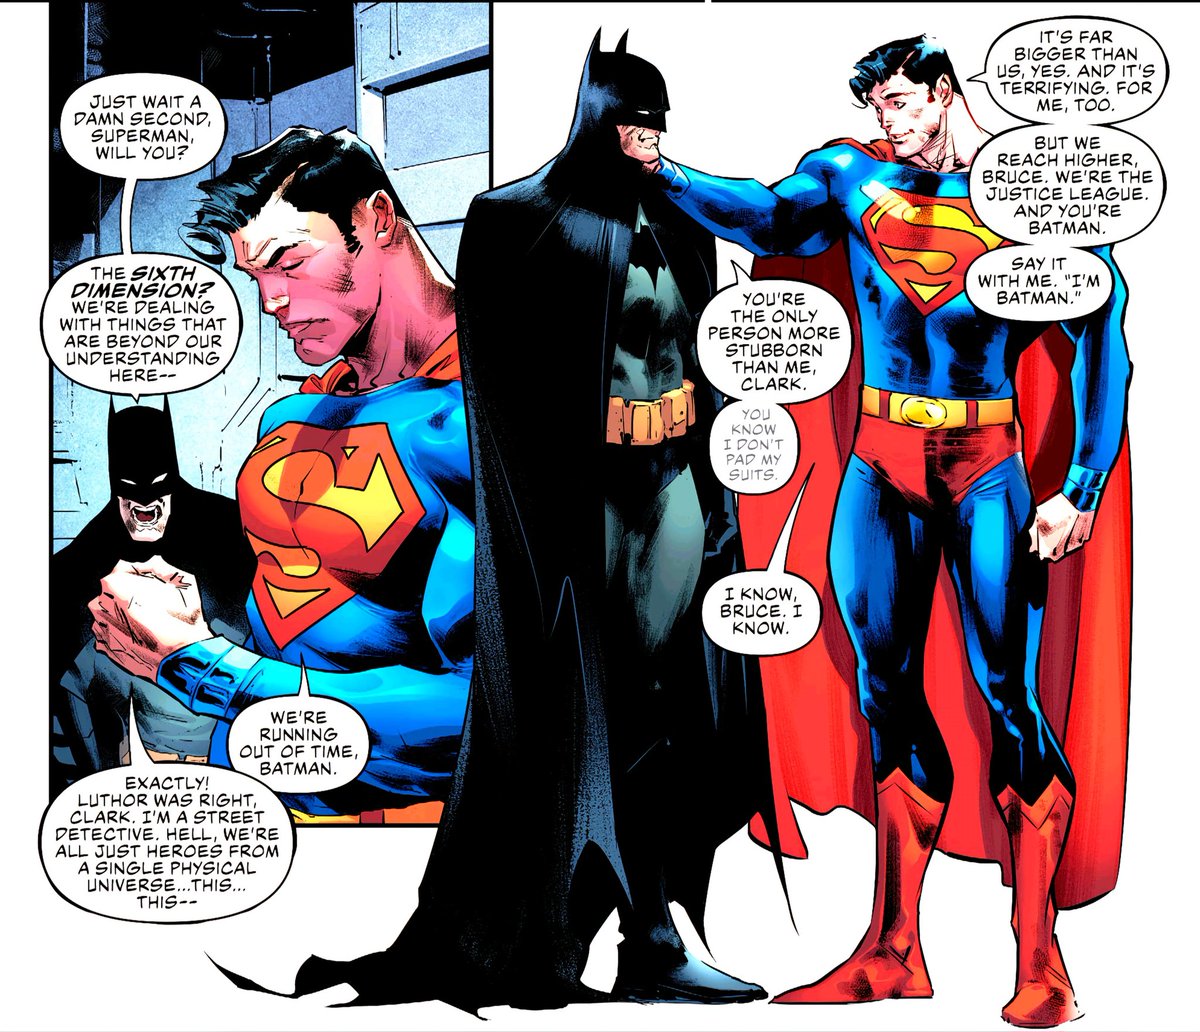 'You're the only person more stubborn than me, Clarke.'
📖Justice League Vol. 4: The Sixth Dimension - James Tynion IV, Jorge Jiménez, and Scott Snyder
#comics #dccomics #DC #Superman #Batman #JusticeLeague